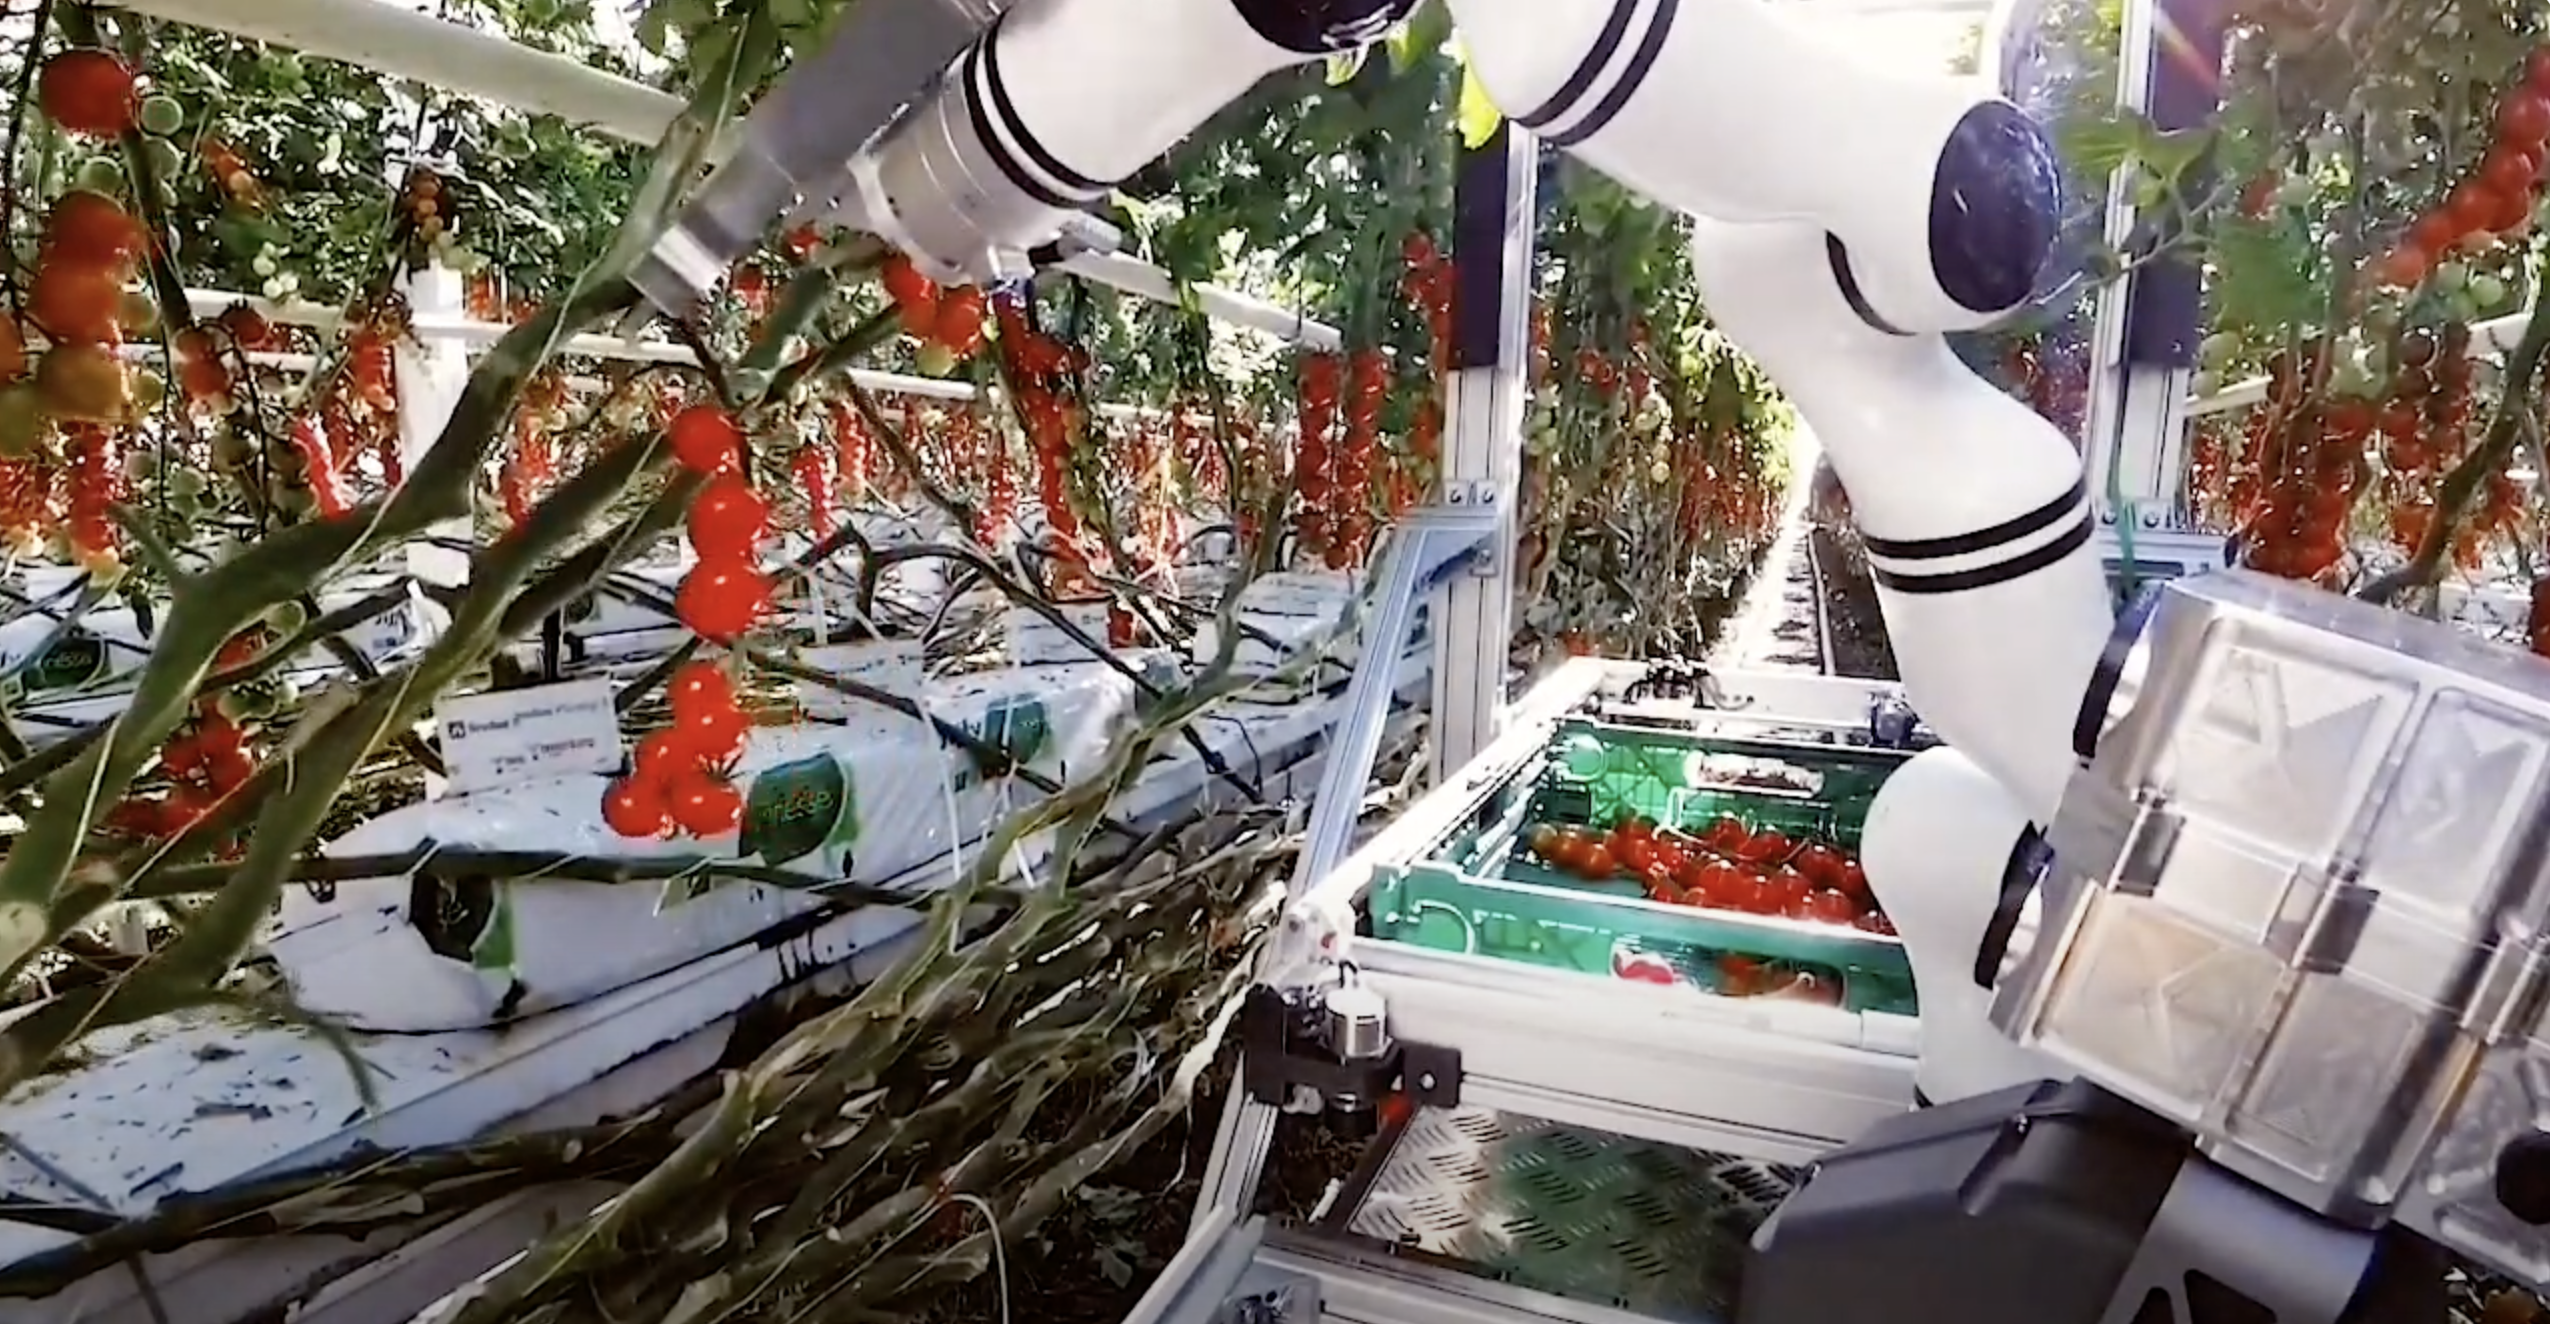 Робот швейцарського стартапу Float­ing Ro­bot­ics збирає врожай томатів в теплицях (відео)